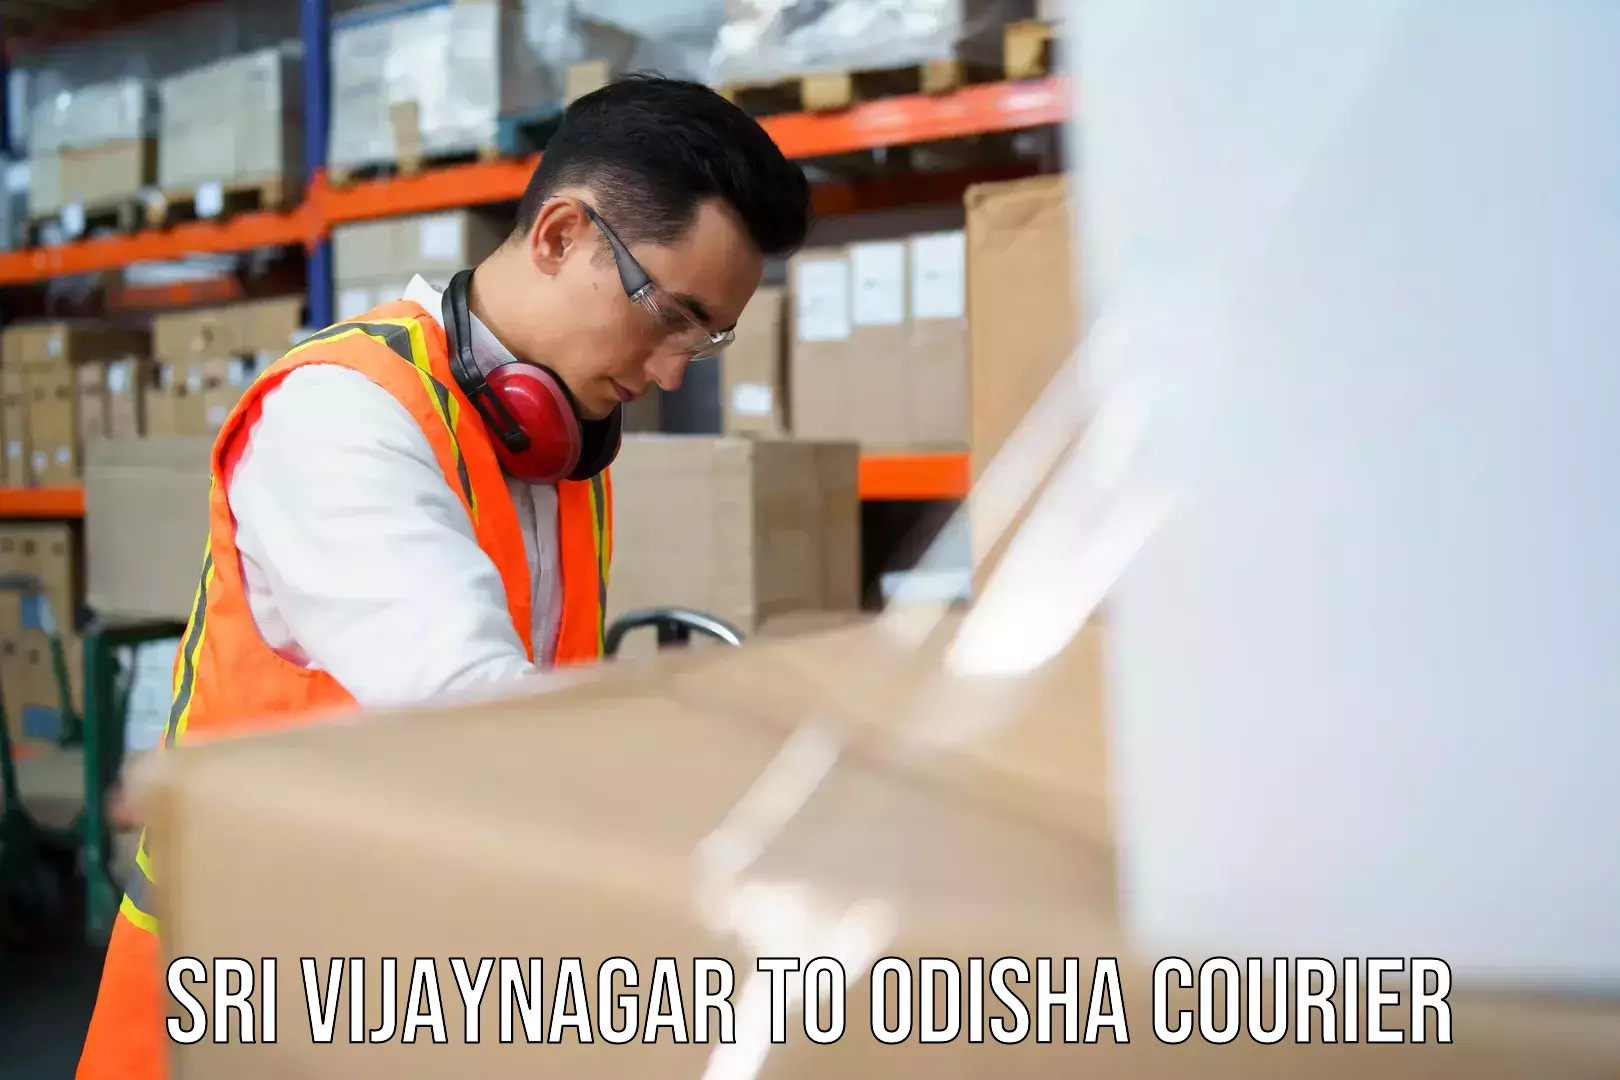 Business logistics support Sri Vijaynagar to Odisha